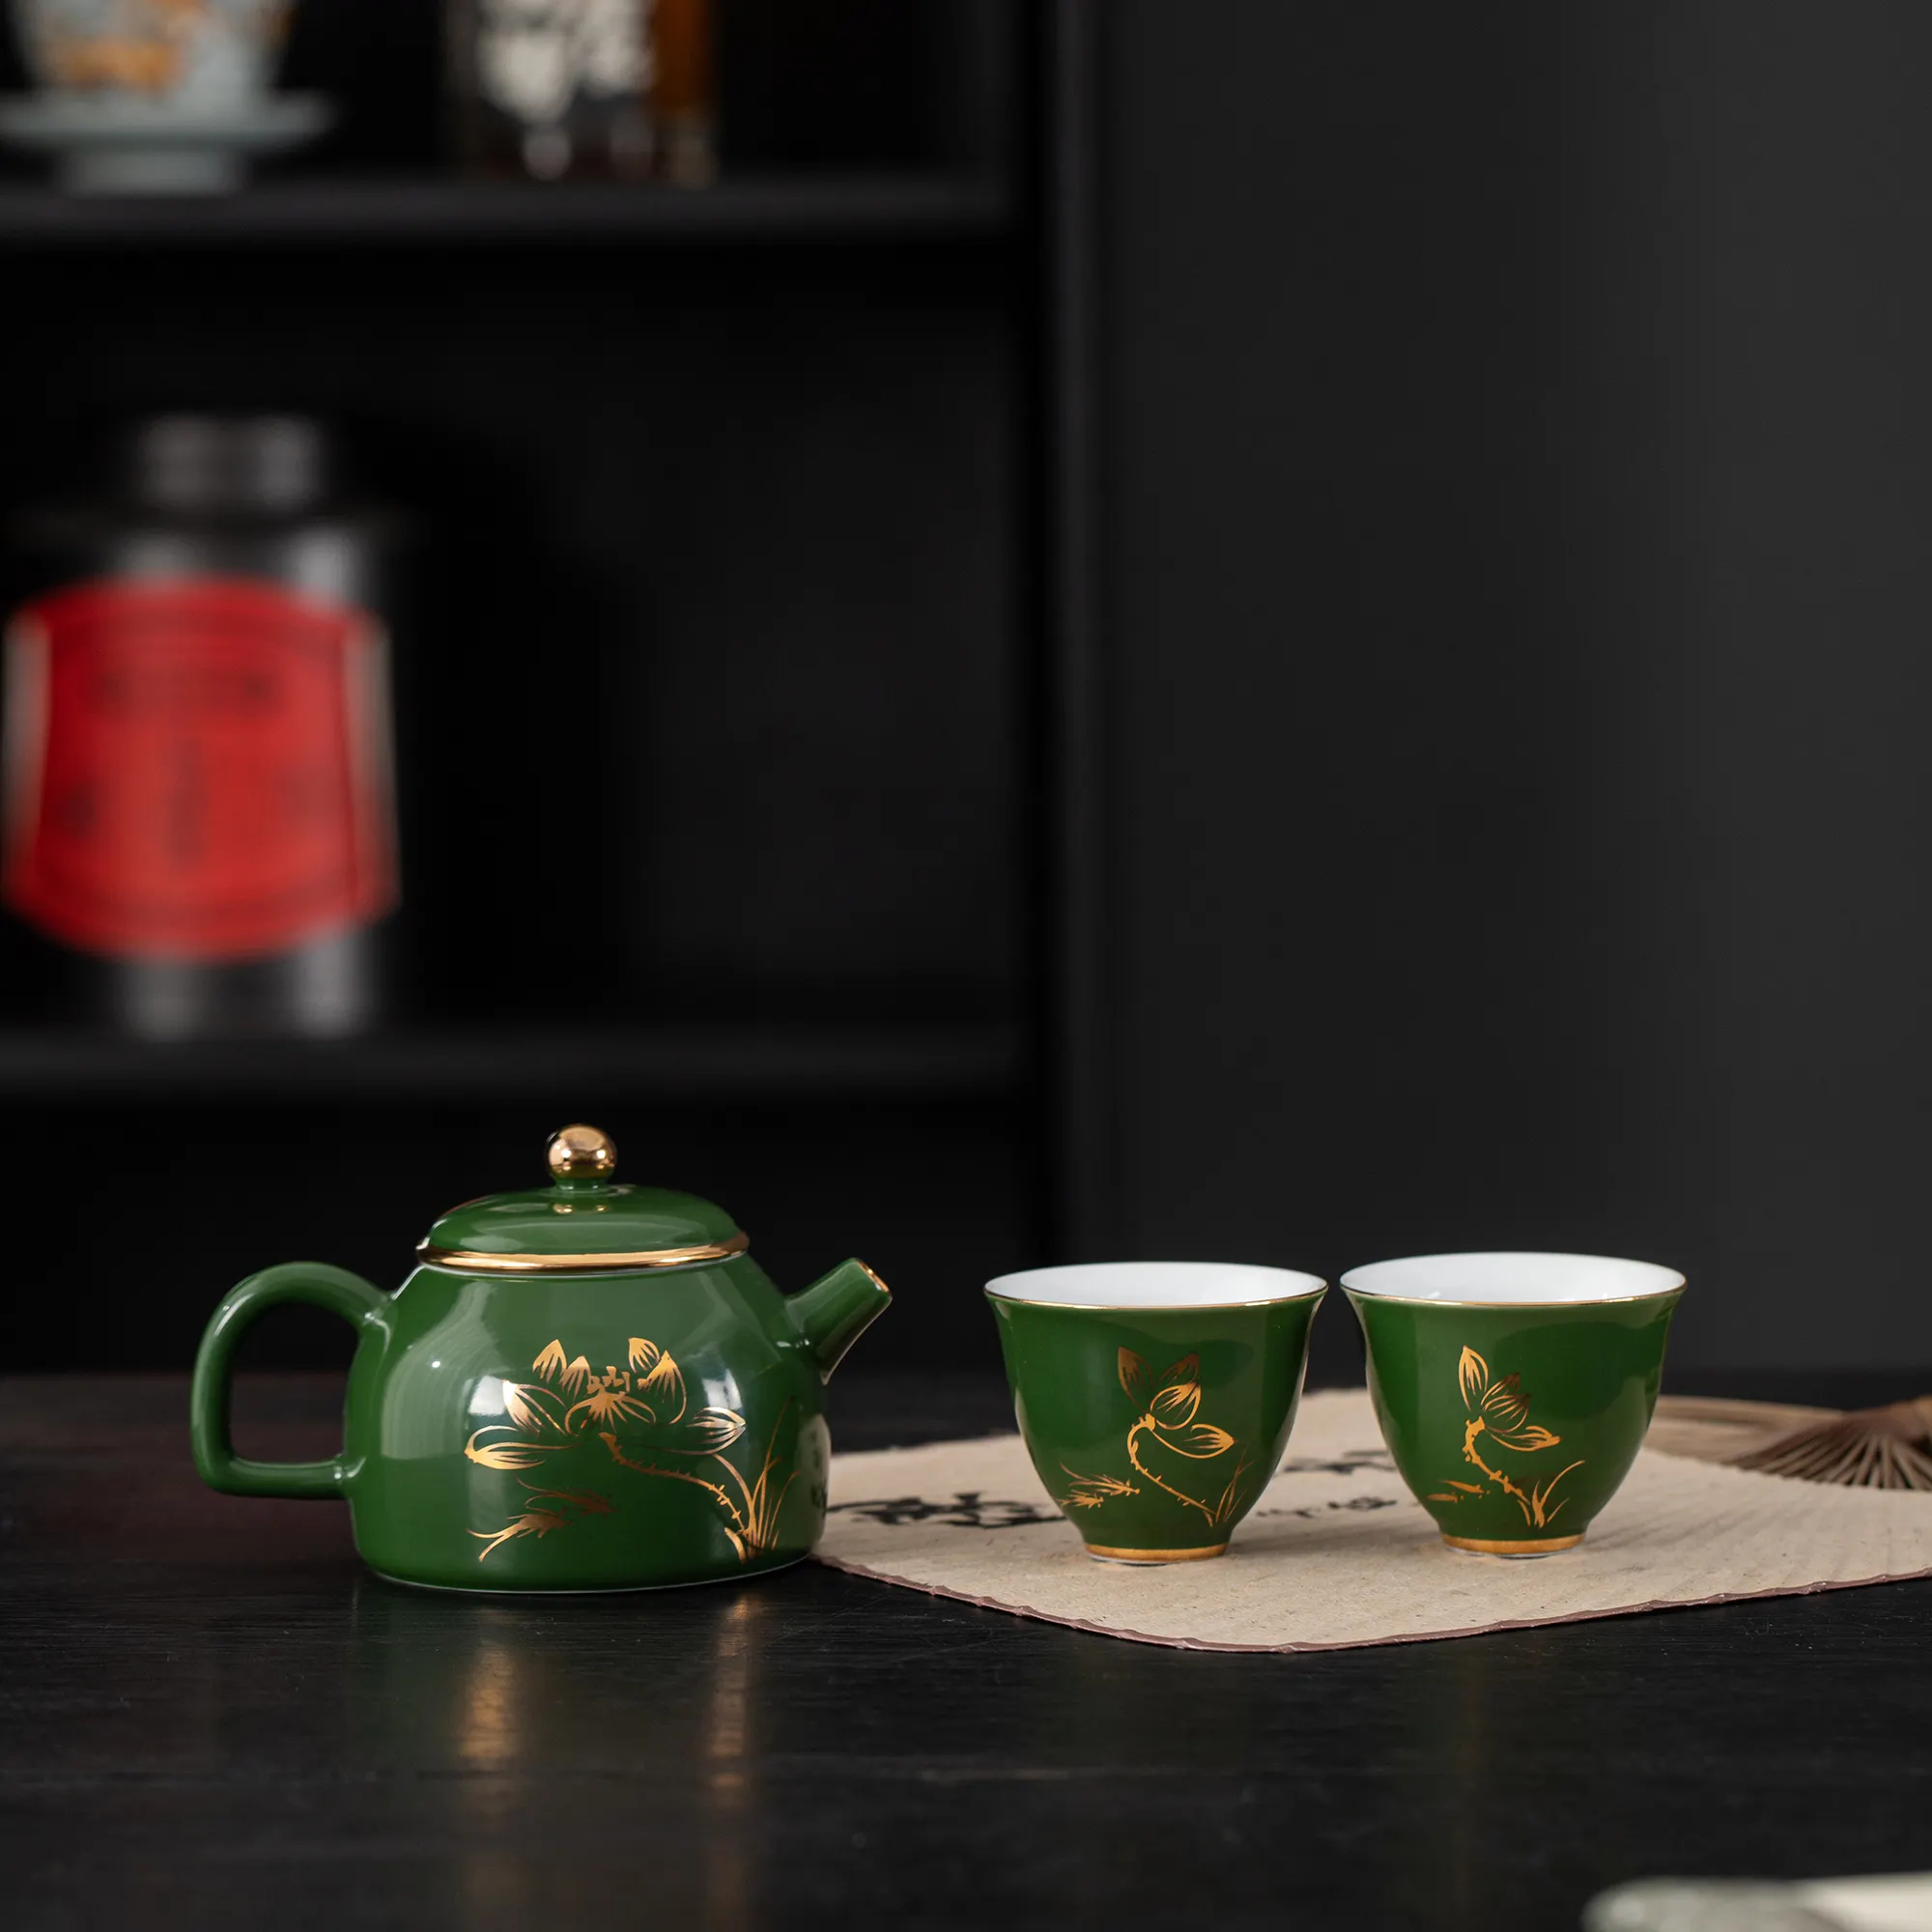 Holesale-TETERA de porcelana blanca personalizada, juego de té chino de cerámica para el té de la tarde